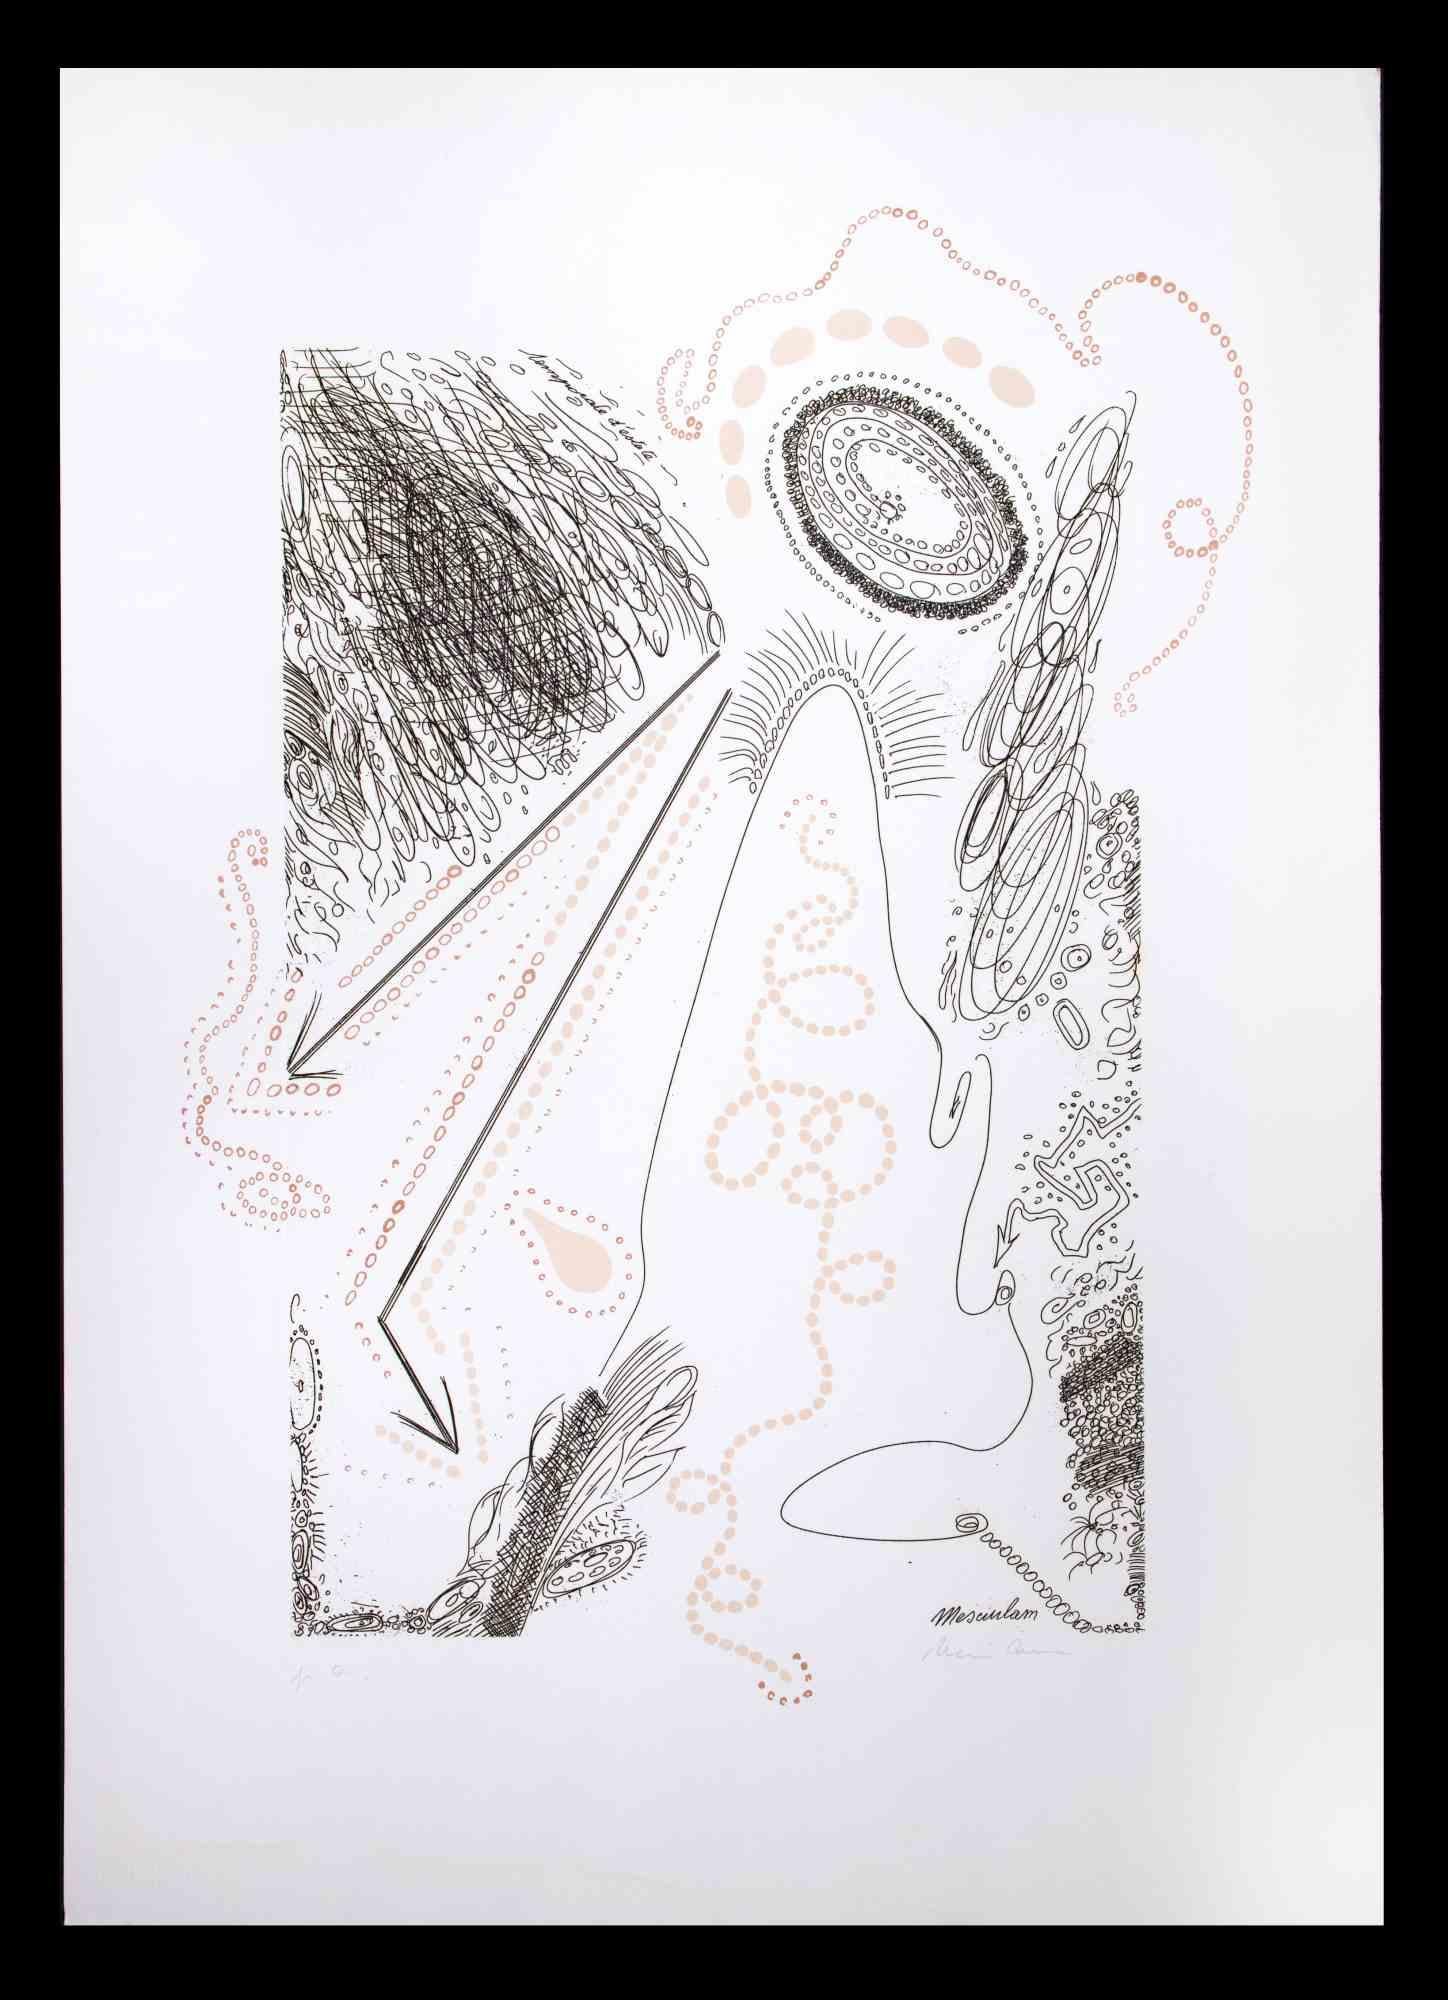 Composition abstraite est une lithographie originale réalisée par Plinio Mesciulam en 1973.

Très bon état sur un carton blanc.

Signé à la main et numéroté par l'artiste dans la marge inférieure.

Plinio Mesciulam (23 décembre 1926 - 19 mai 2021)